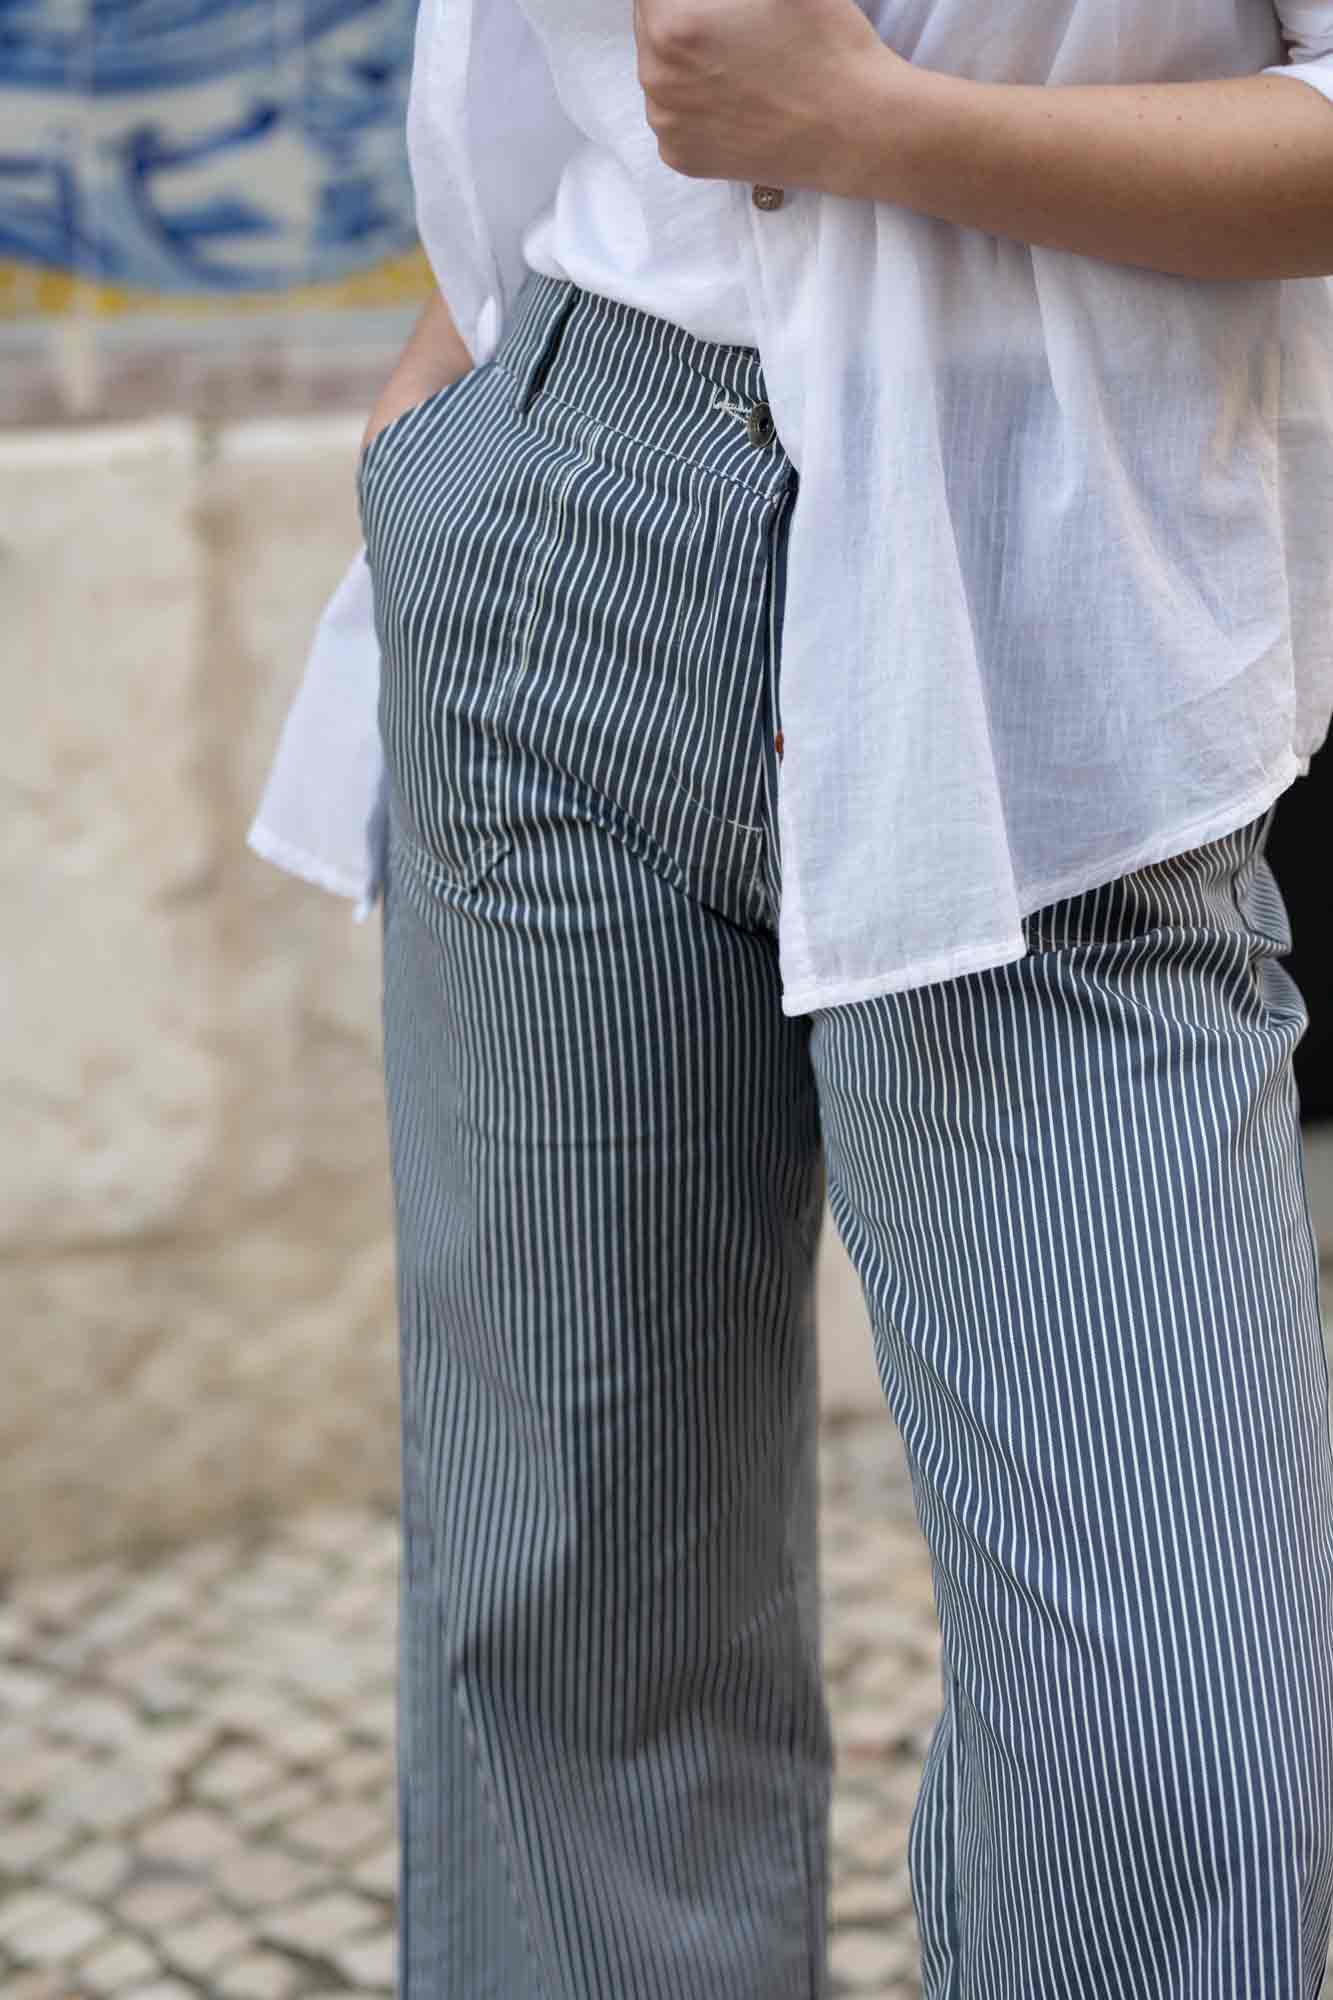 Pantalon stretch rayé bleu et blanc